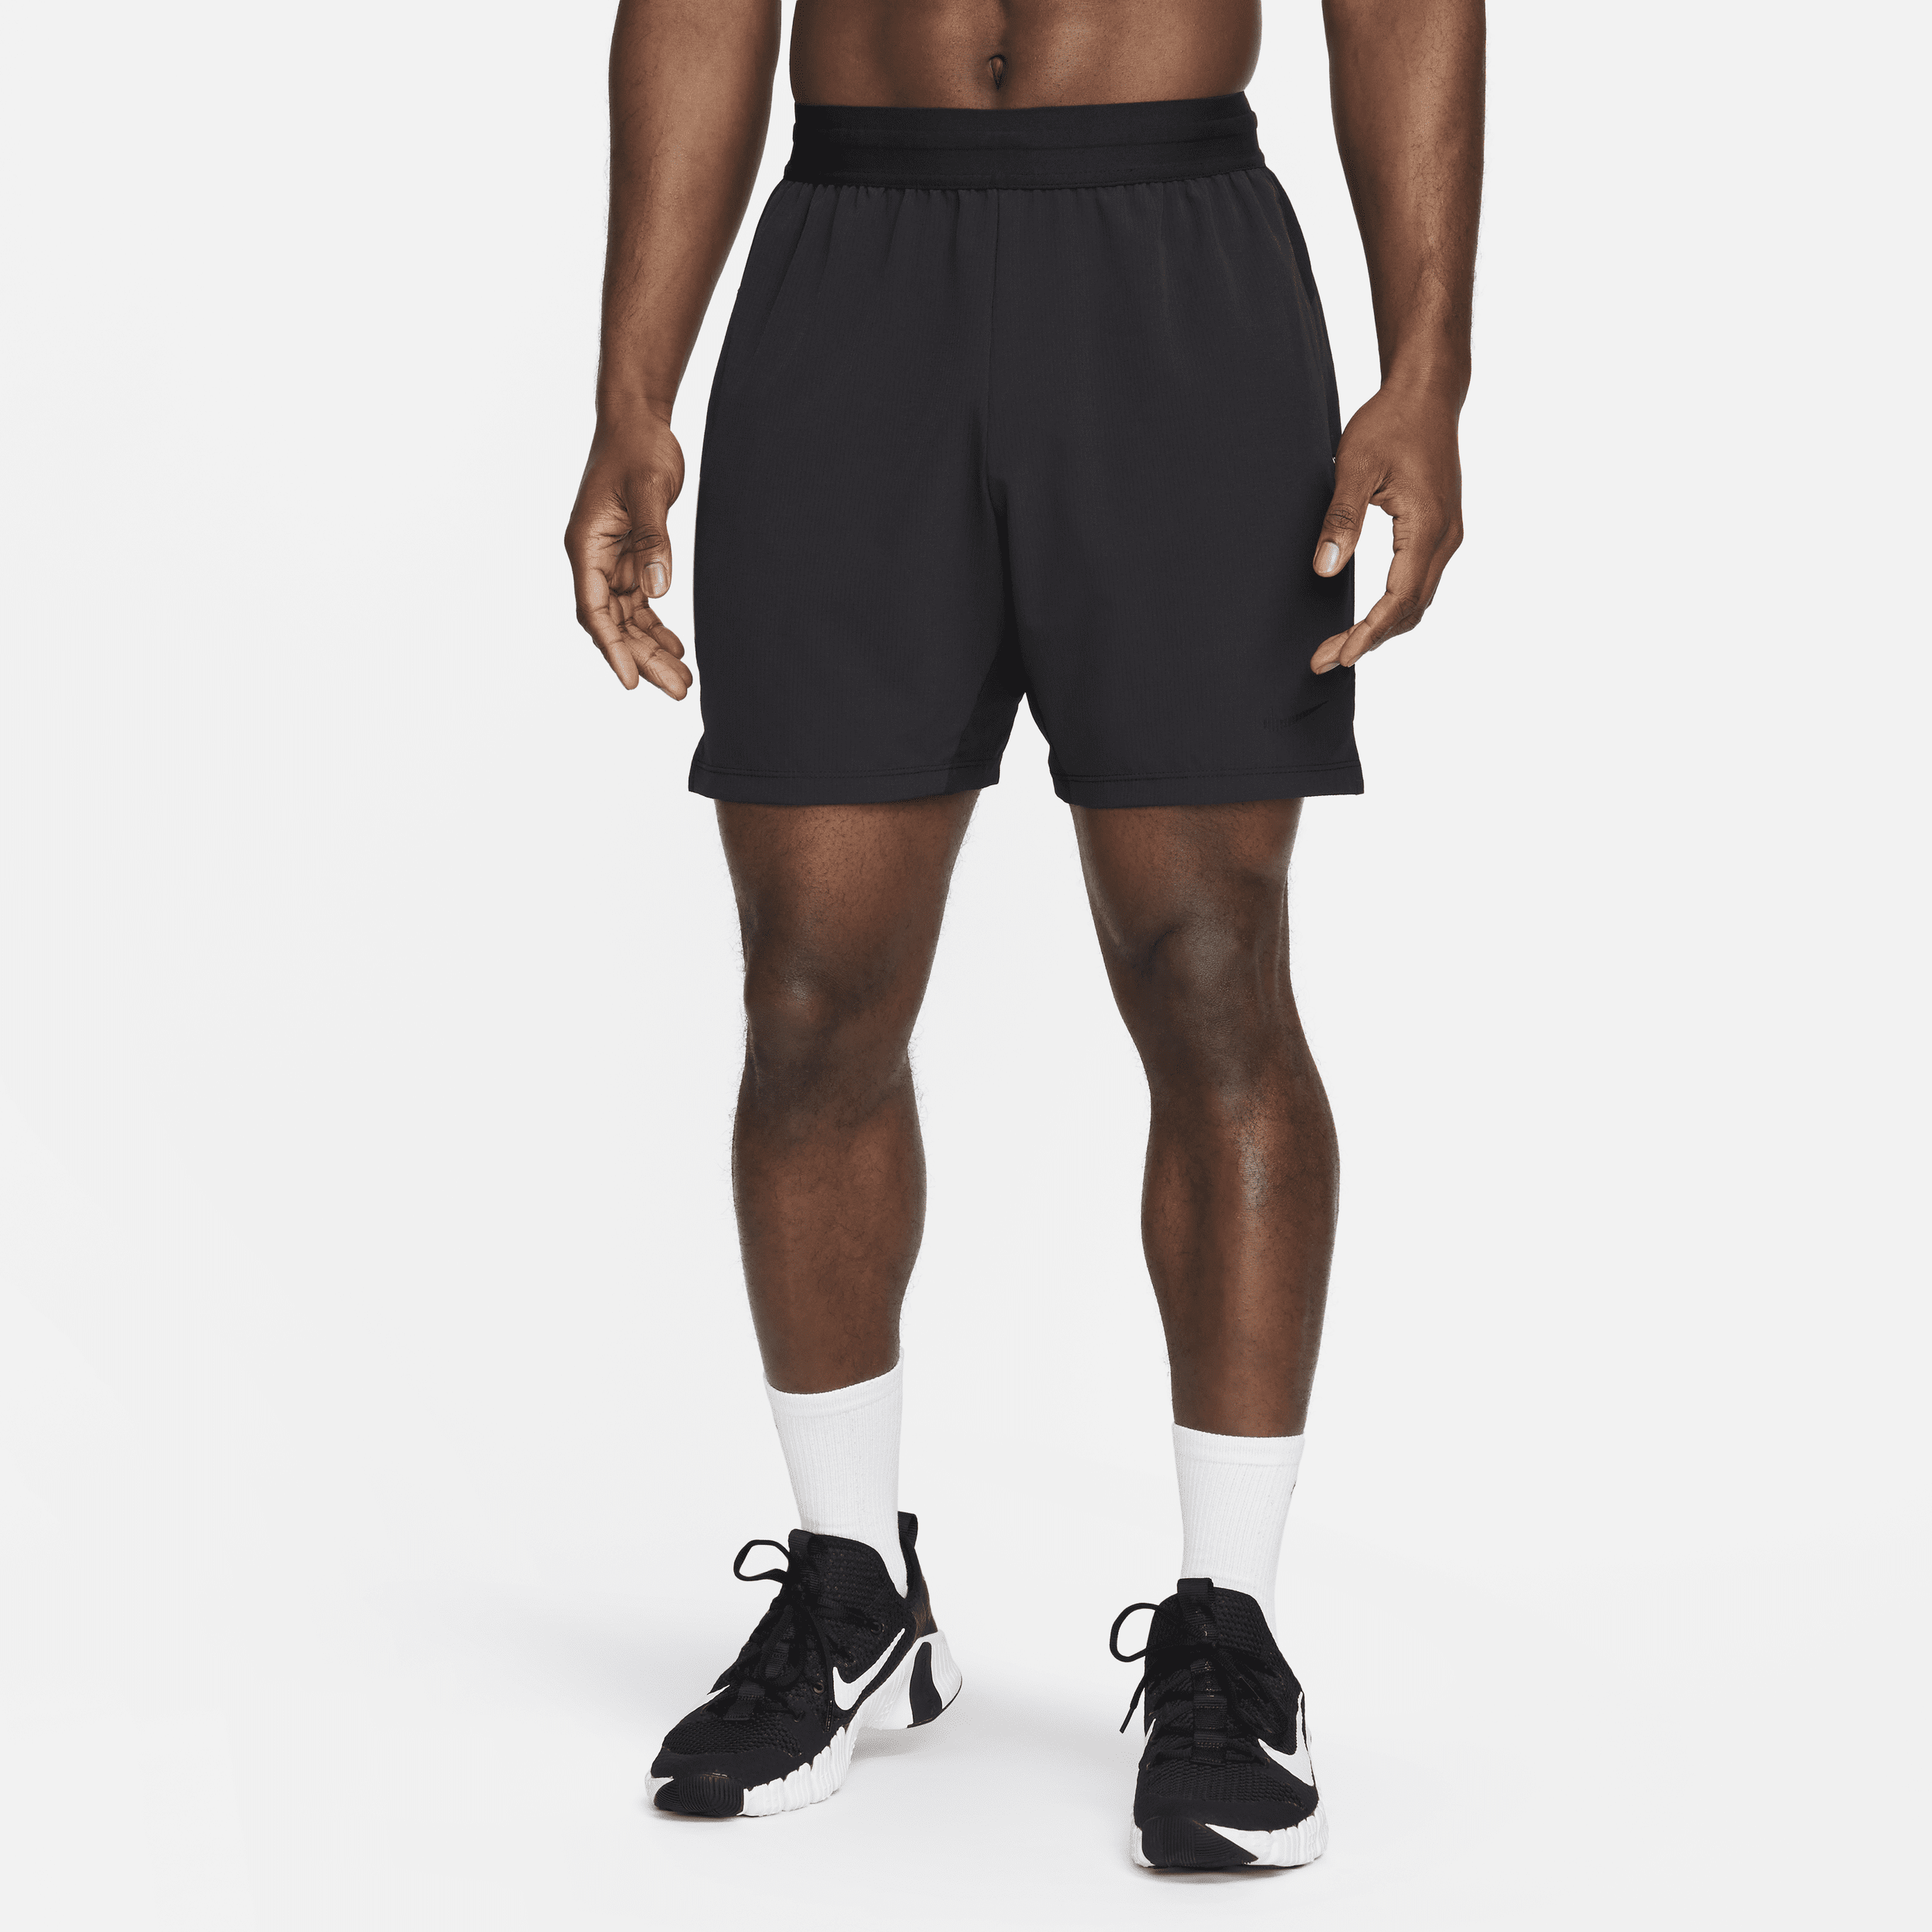 Nike Flex Rep 4.0 Dri-FIT-fitnessshorts uden for (17 cm) til mænd - sort